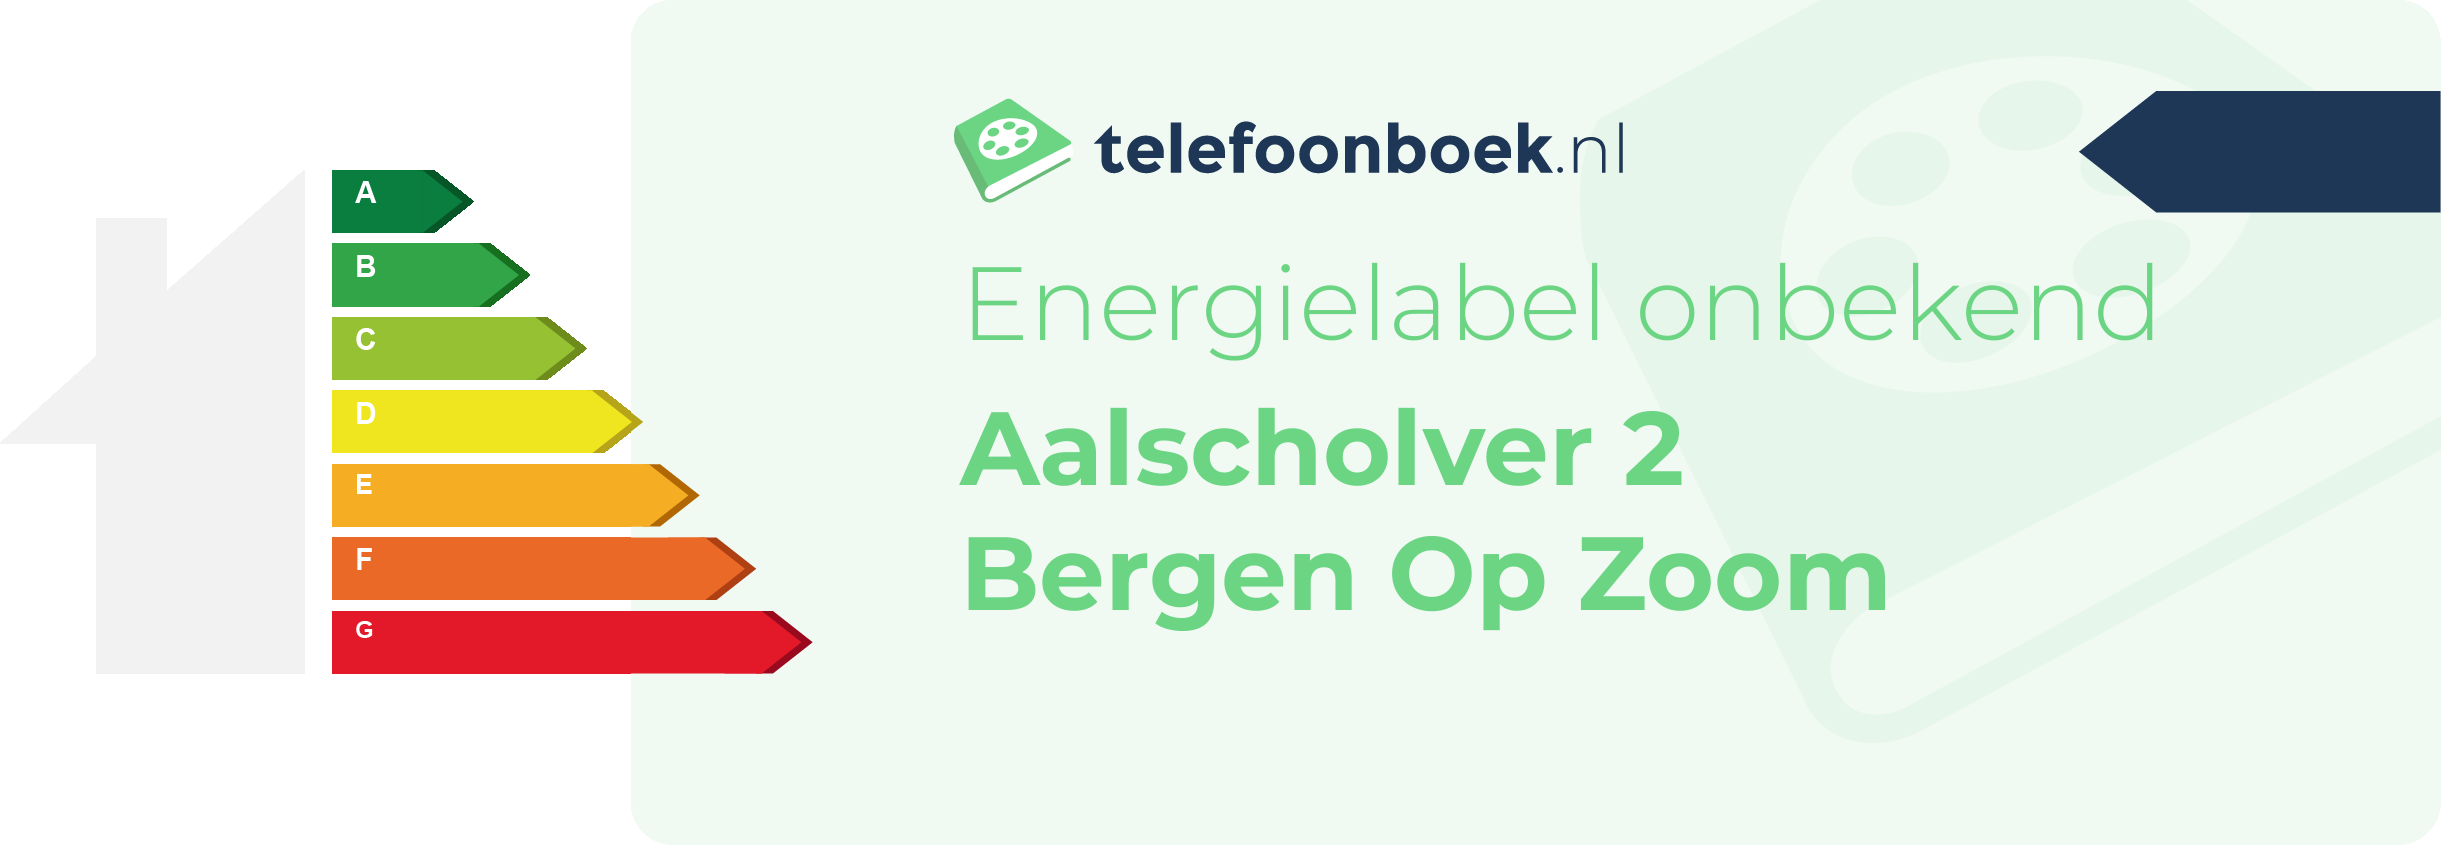 Energielabel Aalscholver 2 Bergen Op Zoom